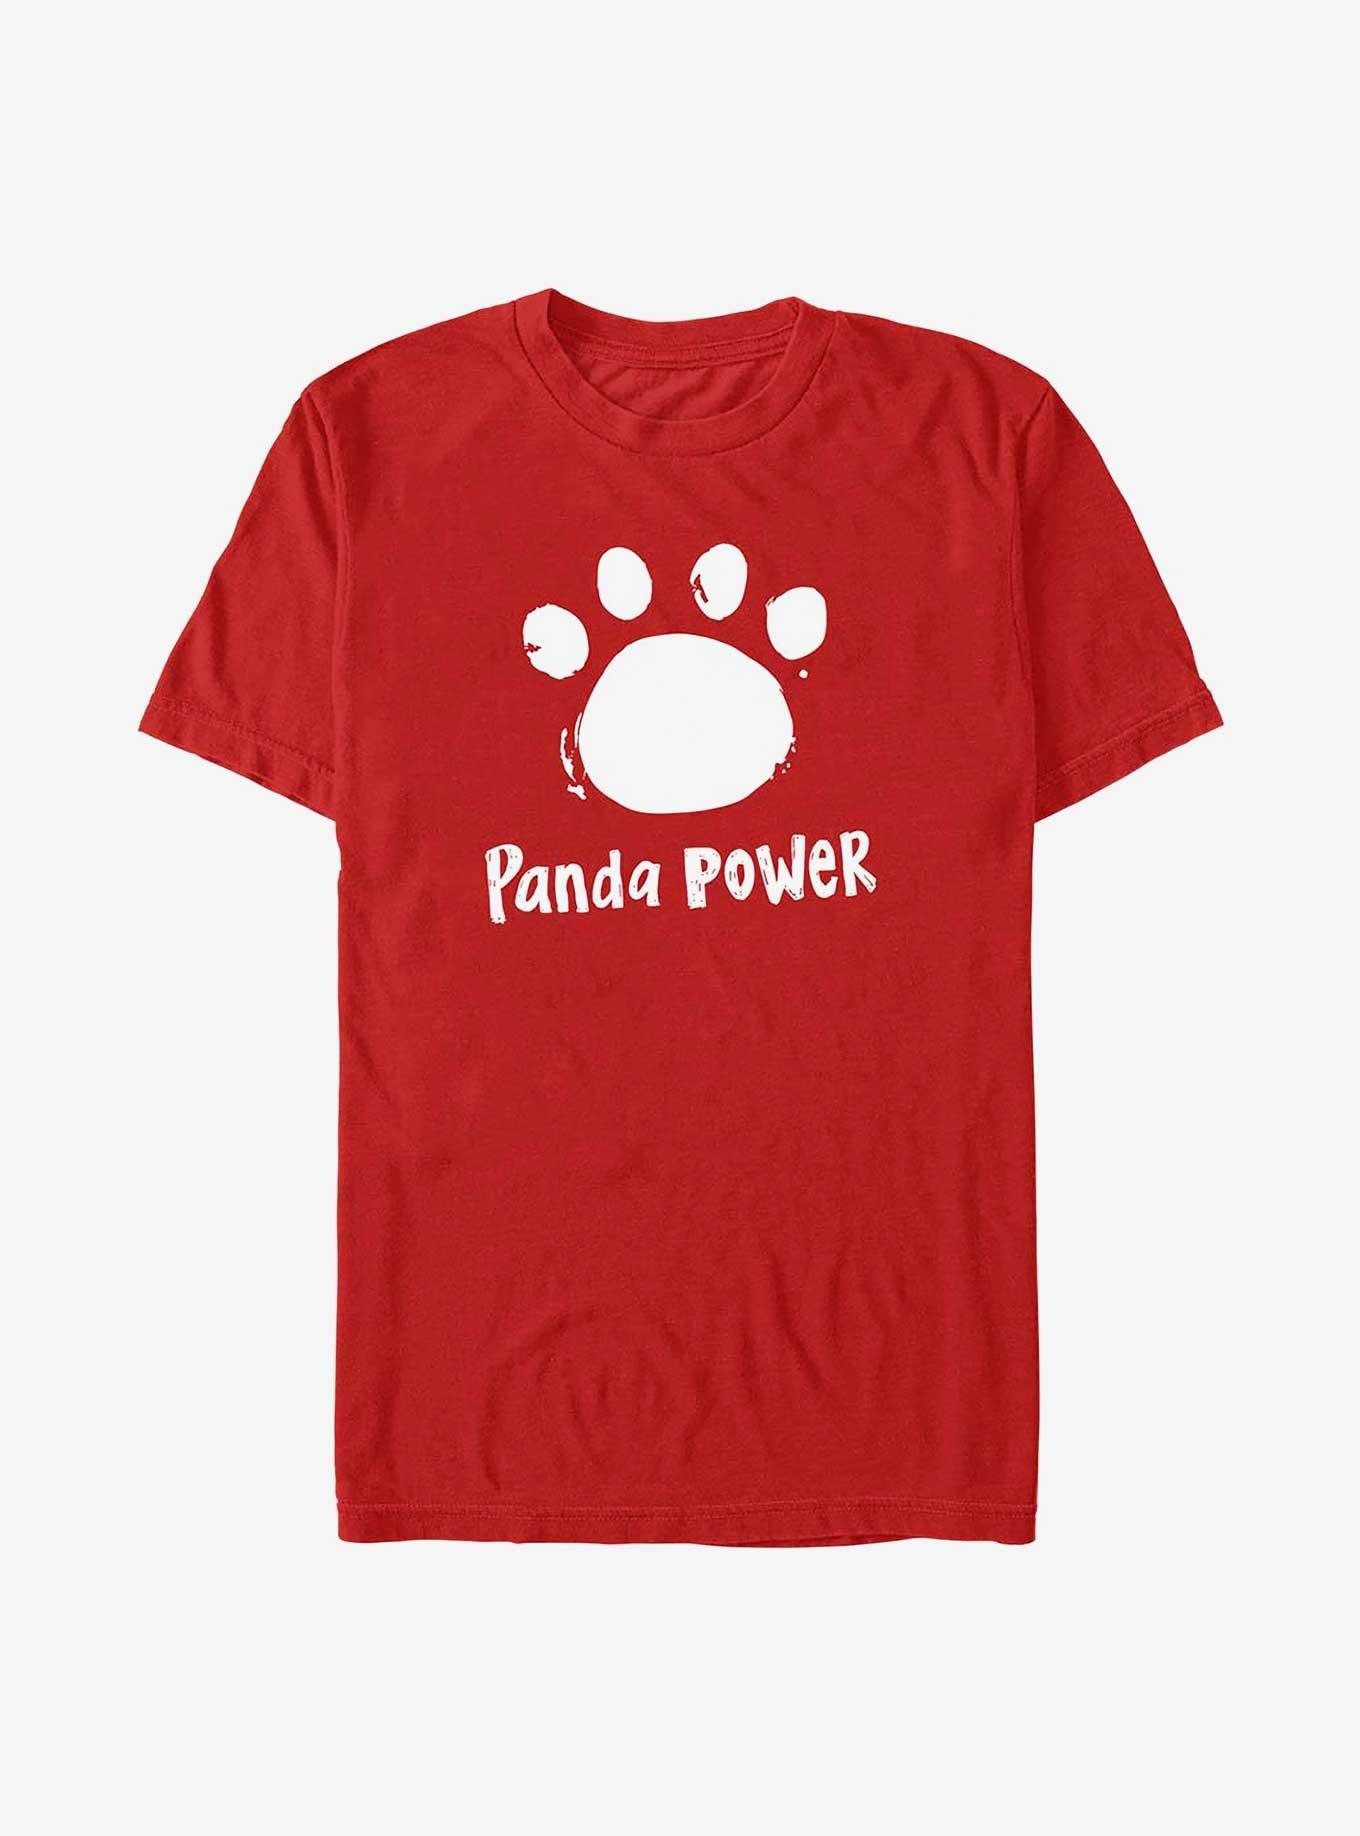 Disney Pixar Turning Red Panda Power T-Shirt